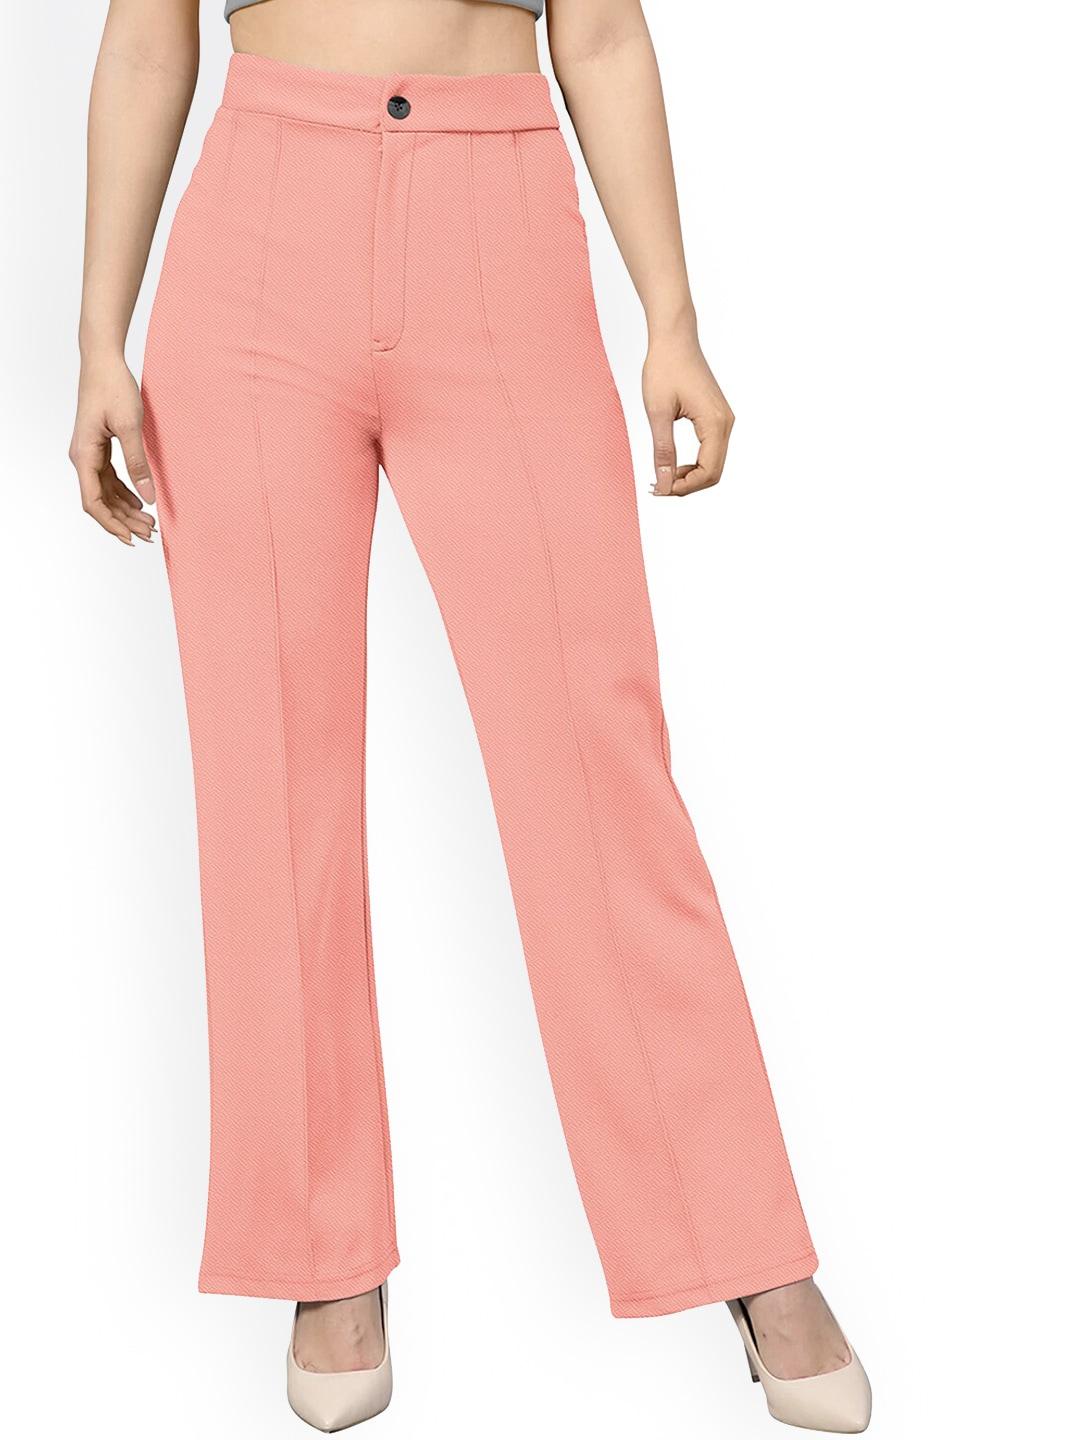 baesd women peach-coloured trousers